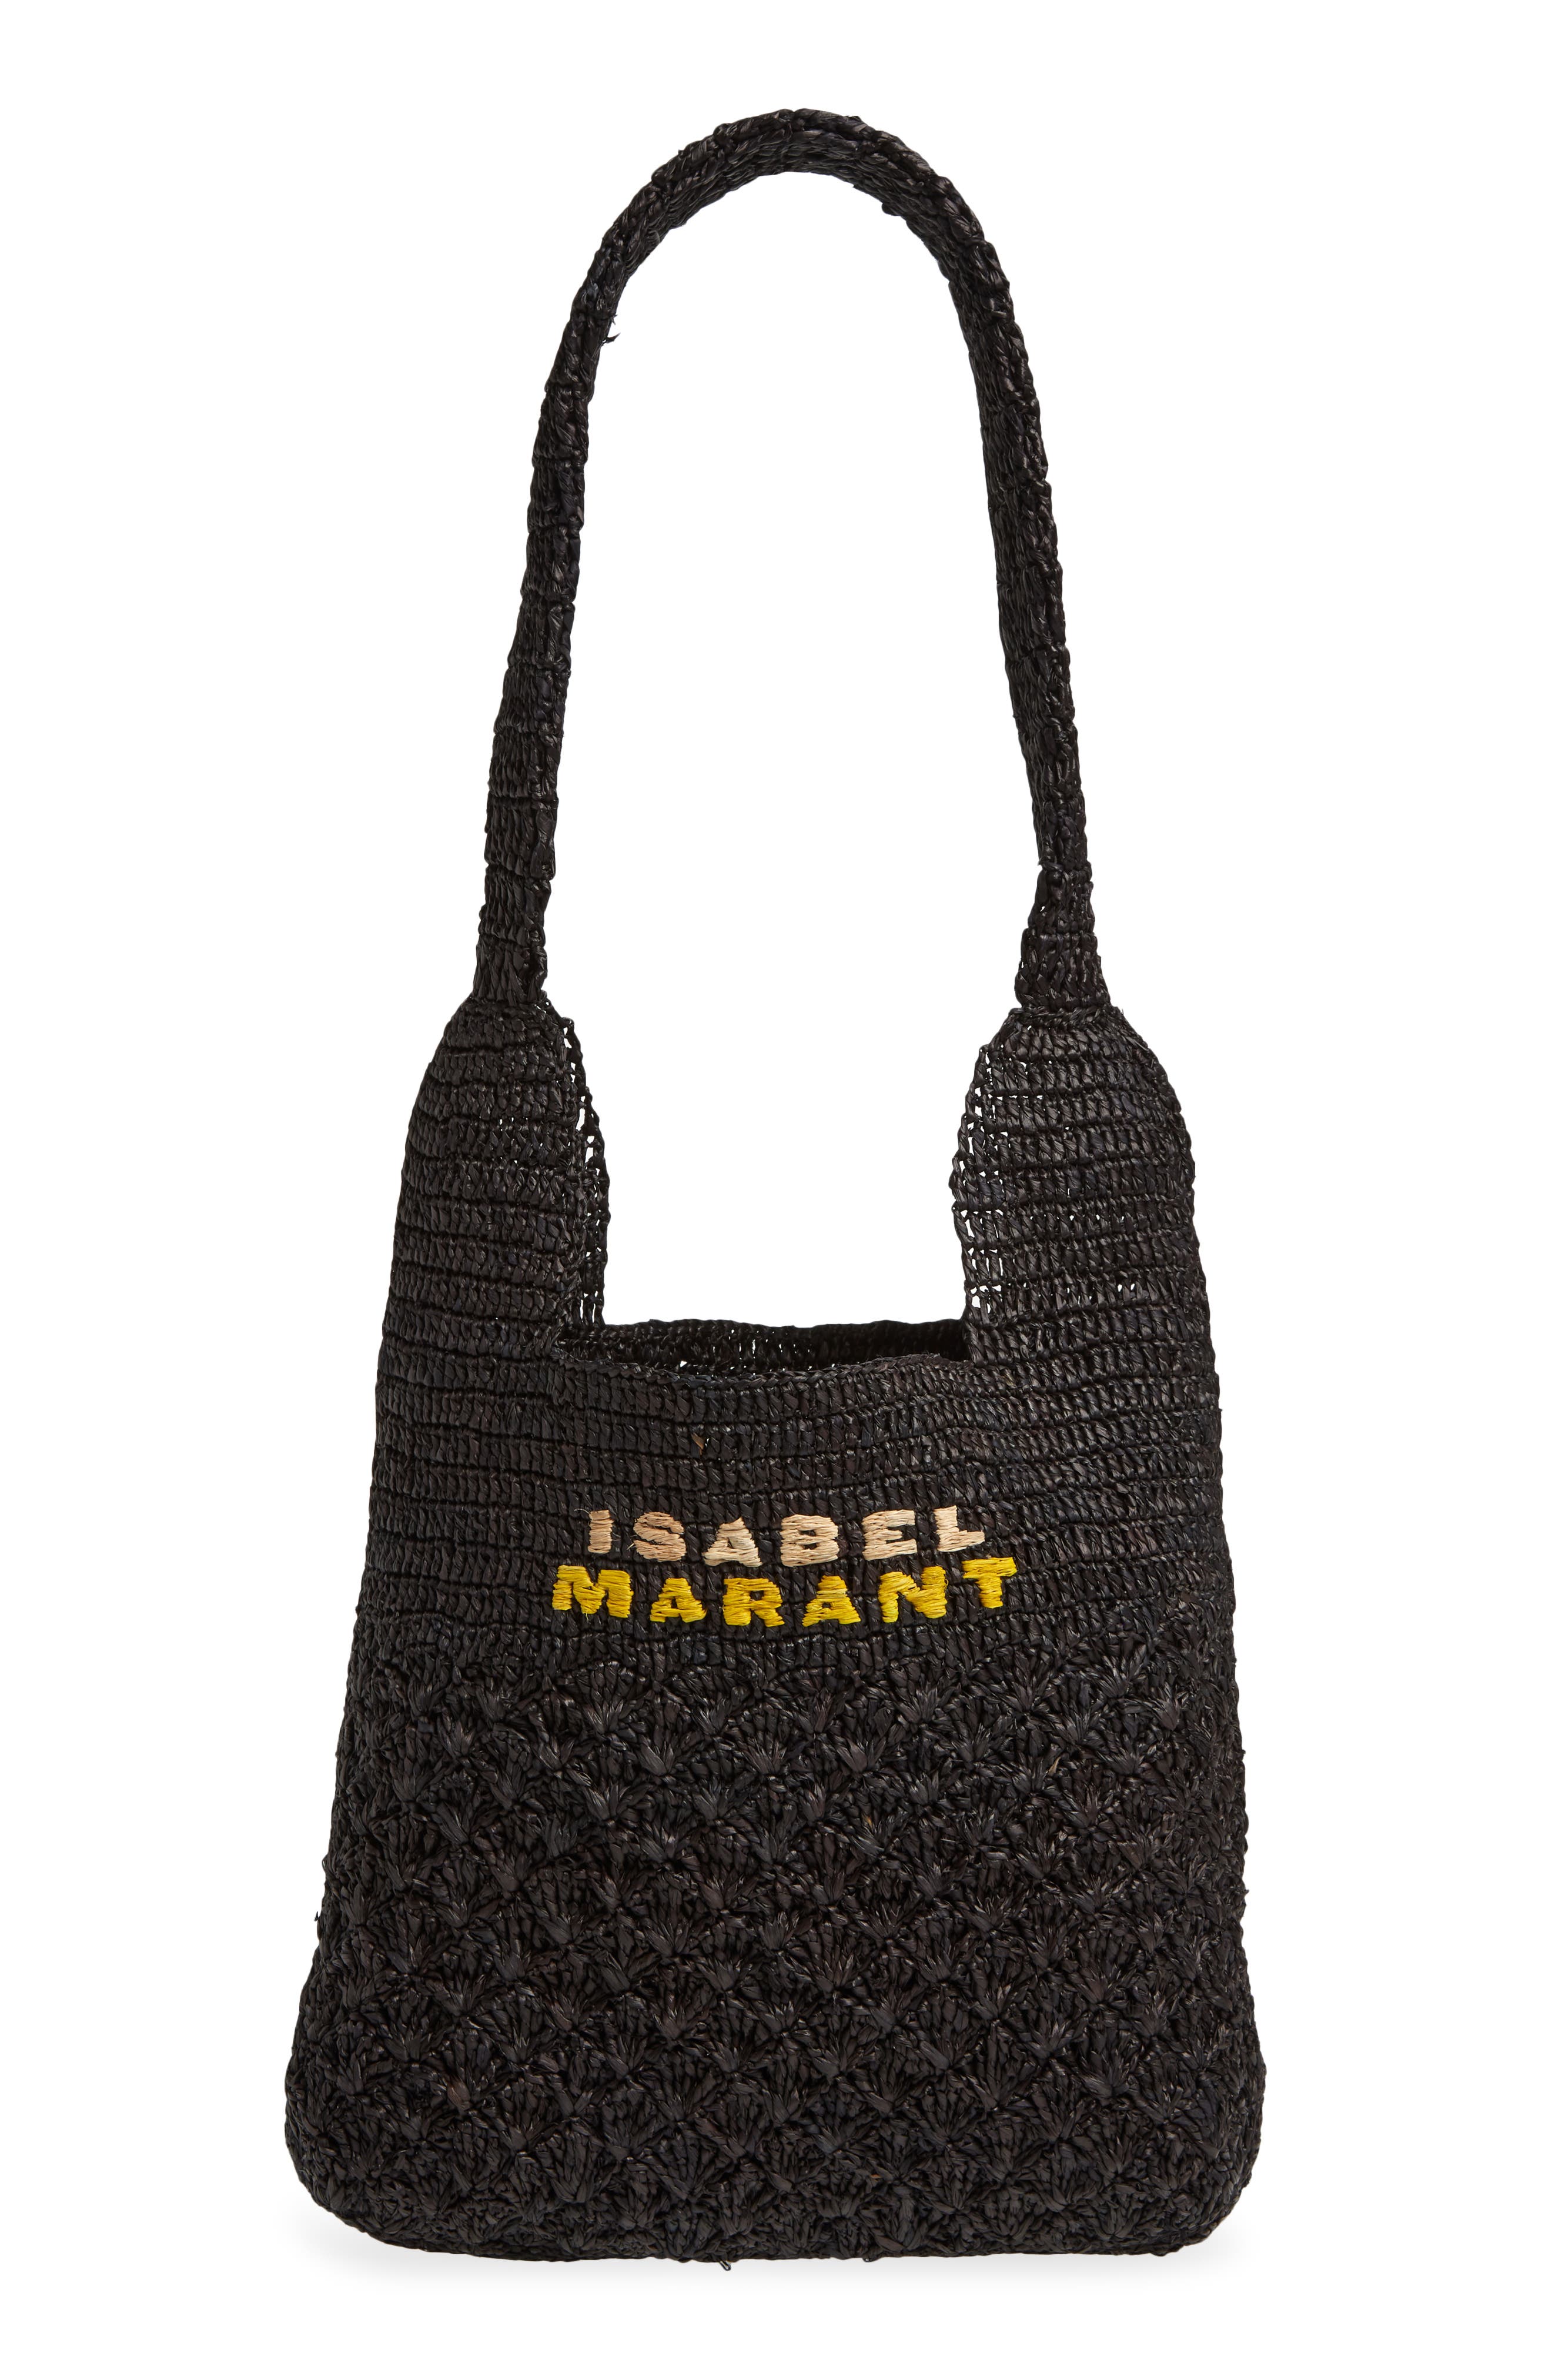 ISABEL MARANT felt tote bag - Grey